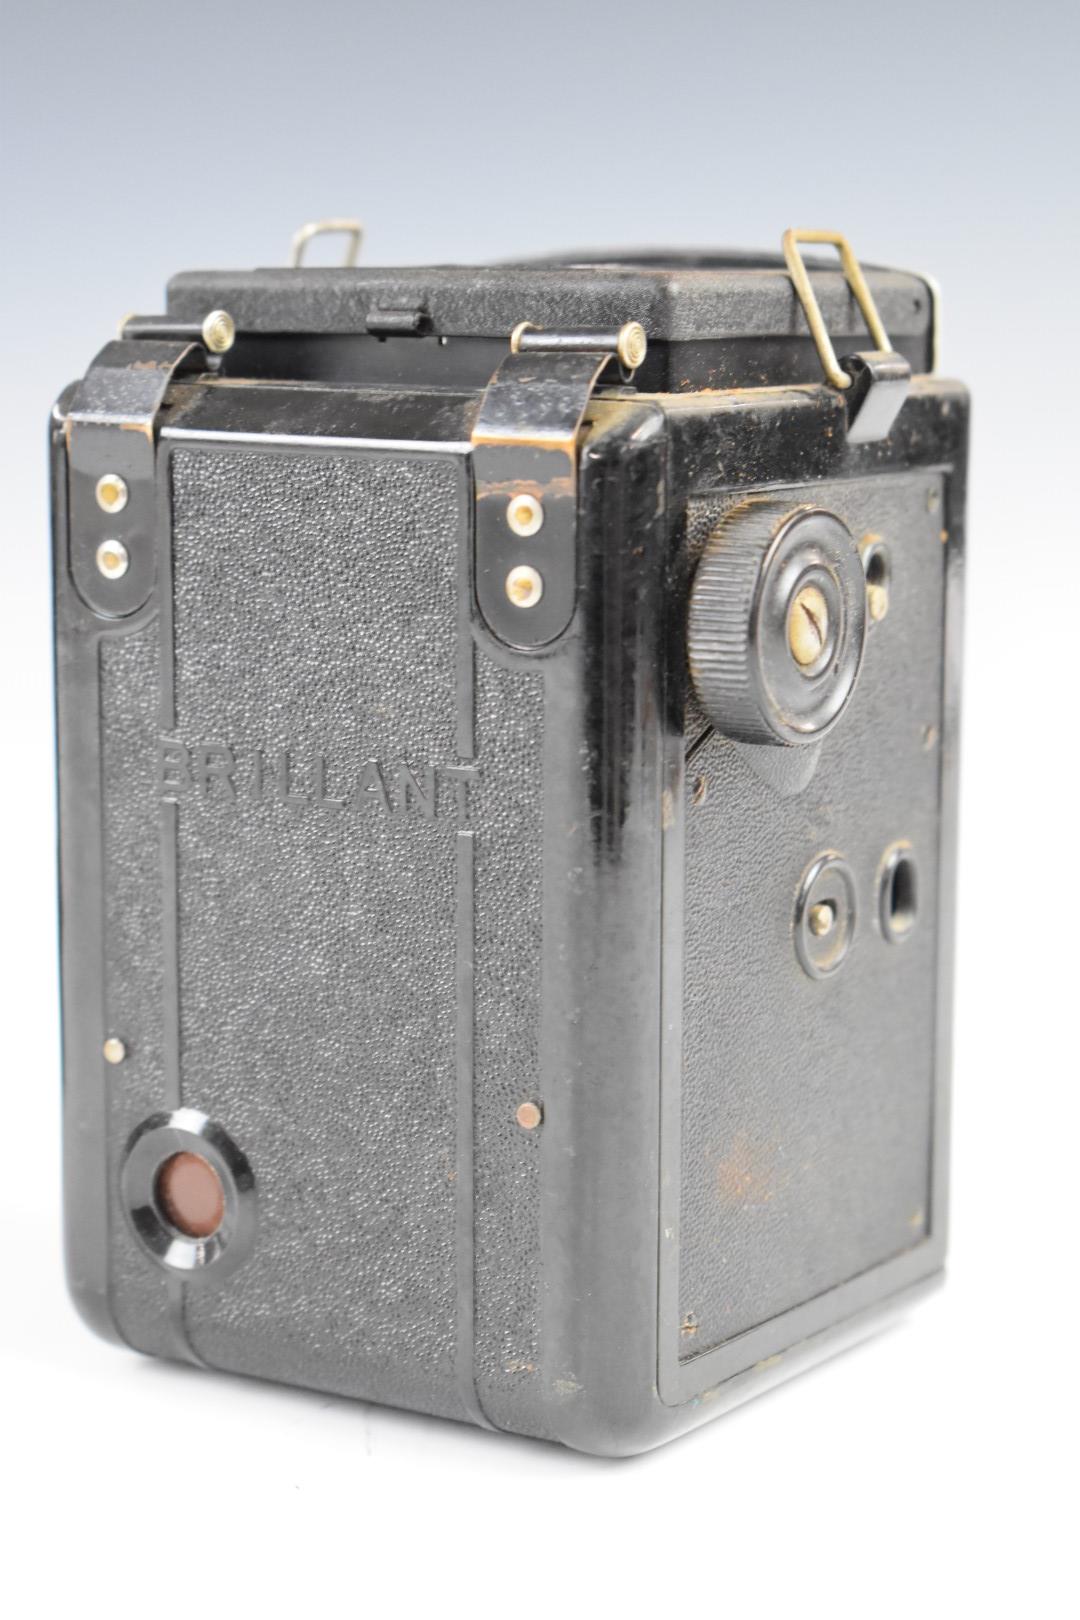 Voigtlander Brilliant TLR camera in original leather case - Image 4 of 8